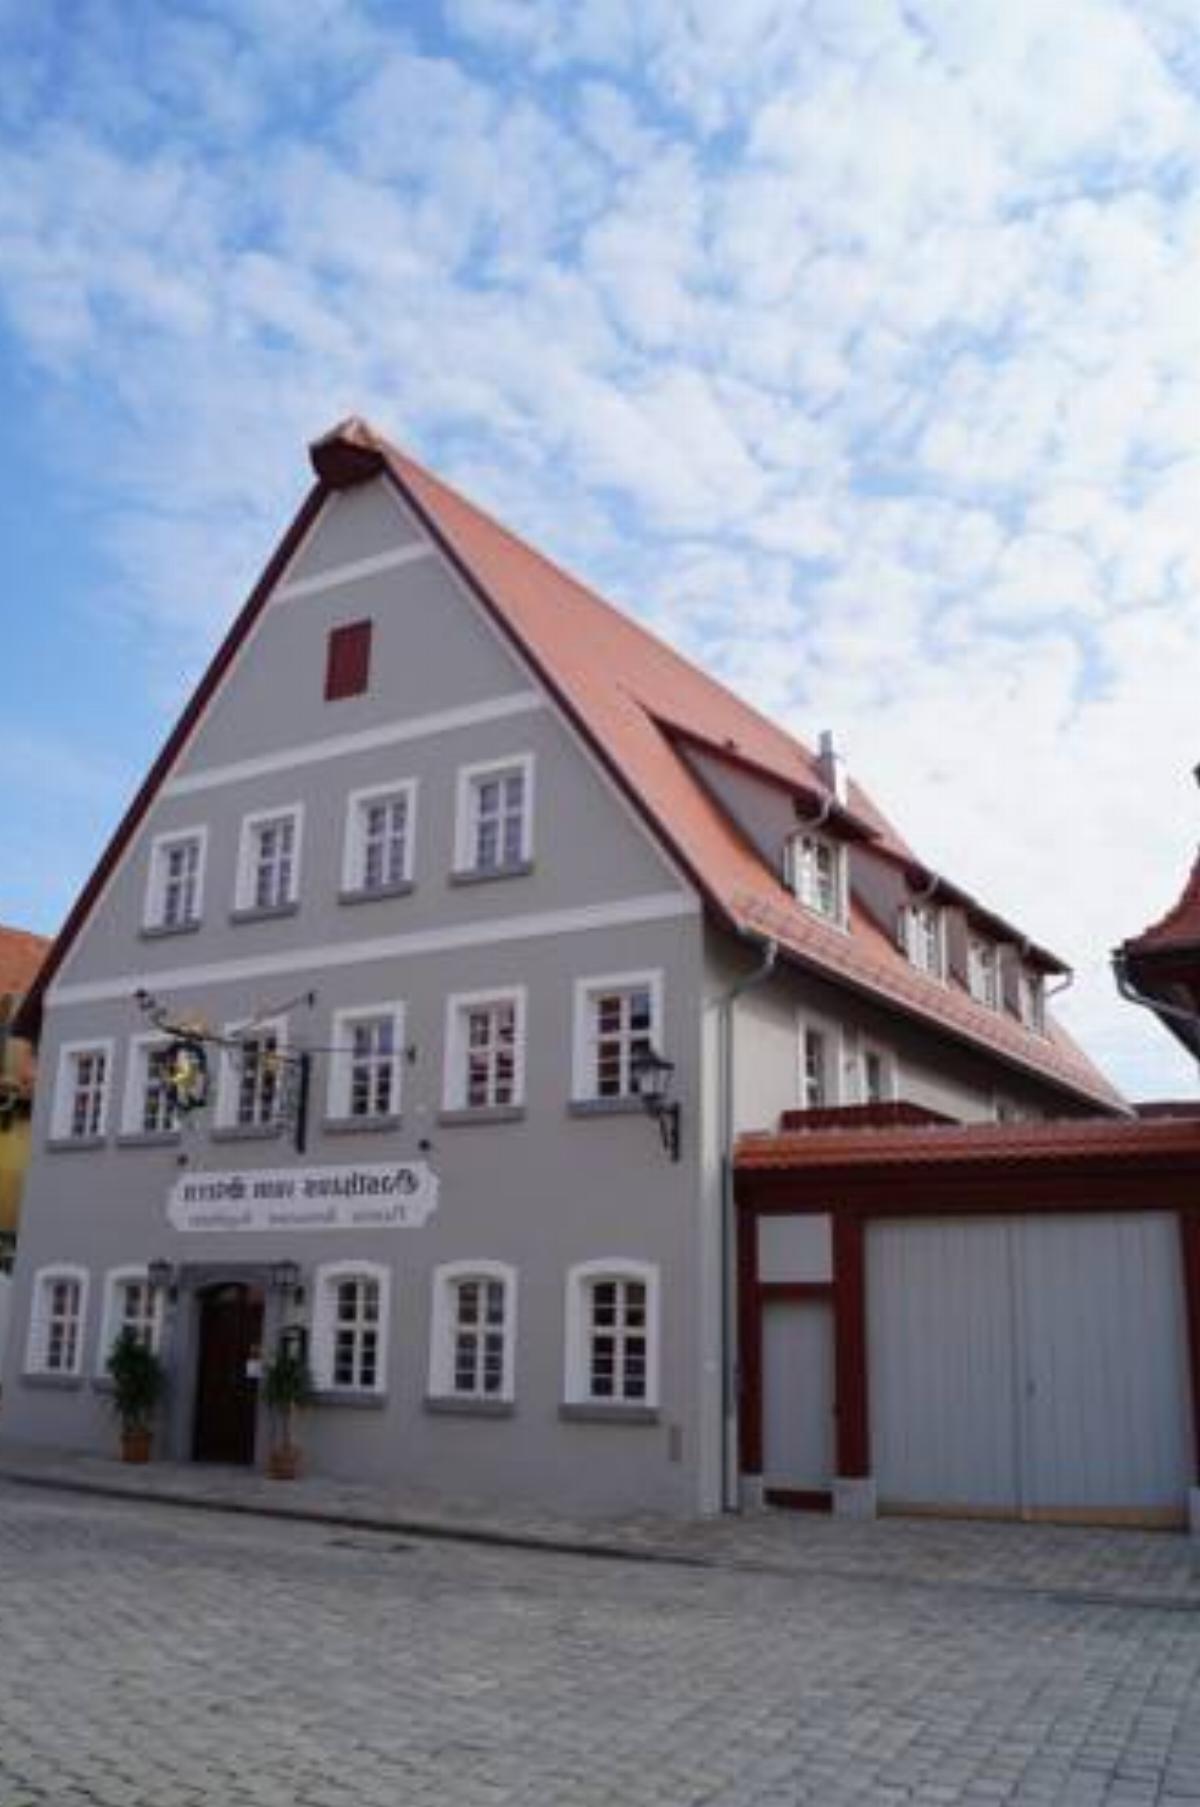 Braumeister Döbler - Ferienwohnungen Hotel Bad Windsheim Germany